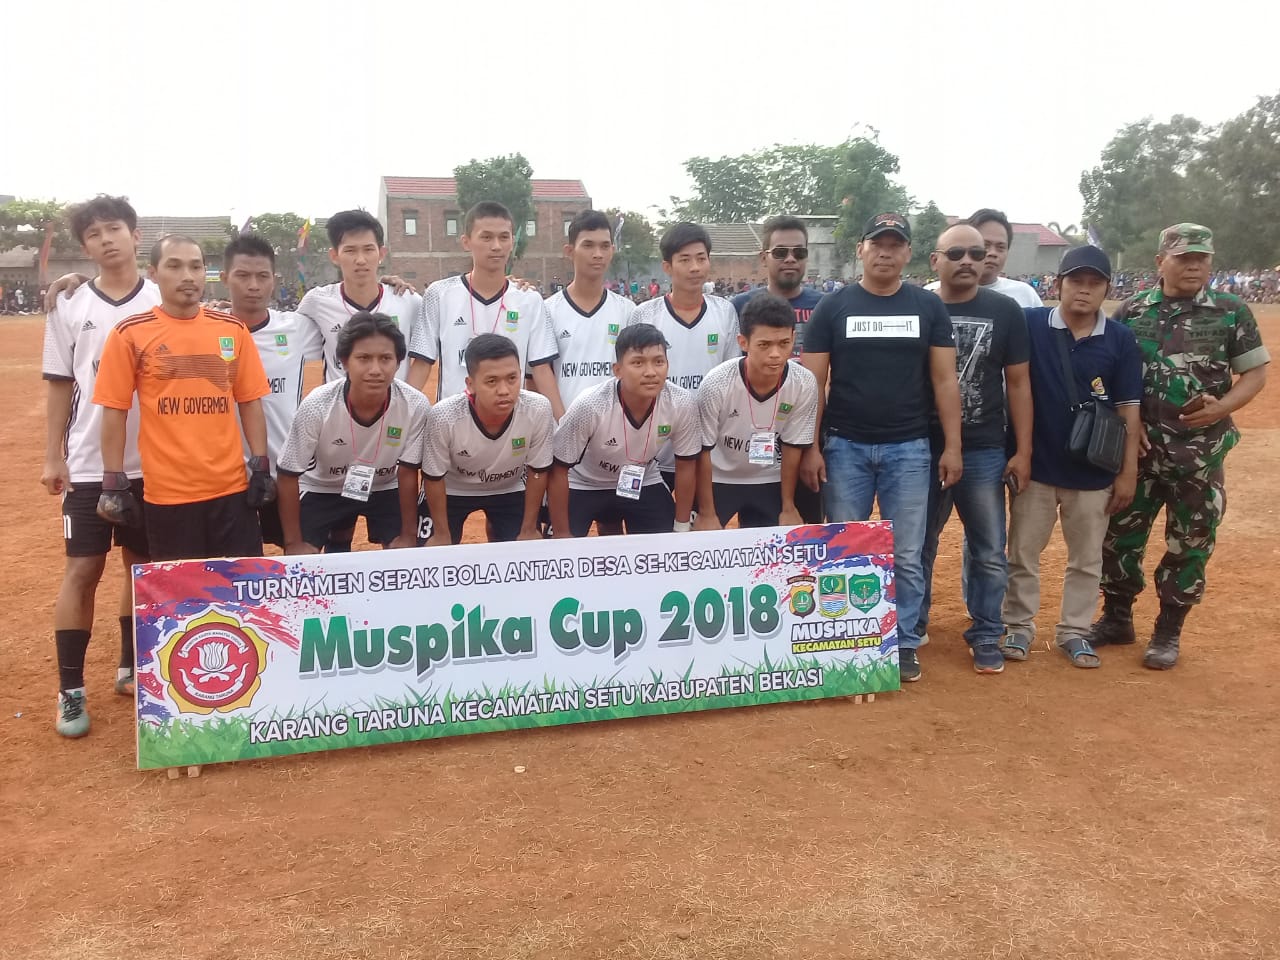 Bang Yosep Apresiasi Pemenang Qosidah dan Tim Sepak Bola Desa Lubangbuaya - Desapedia